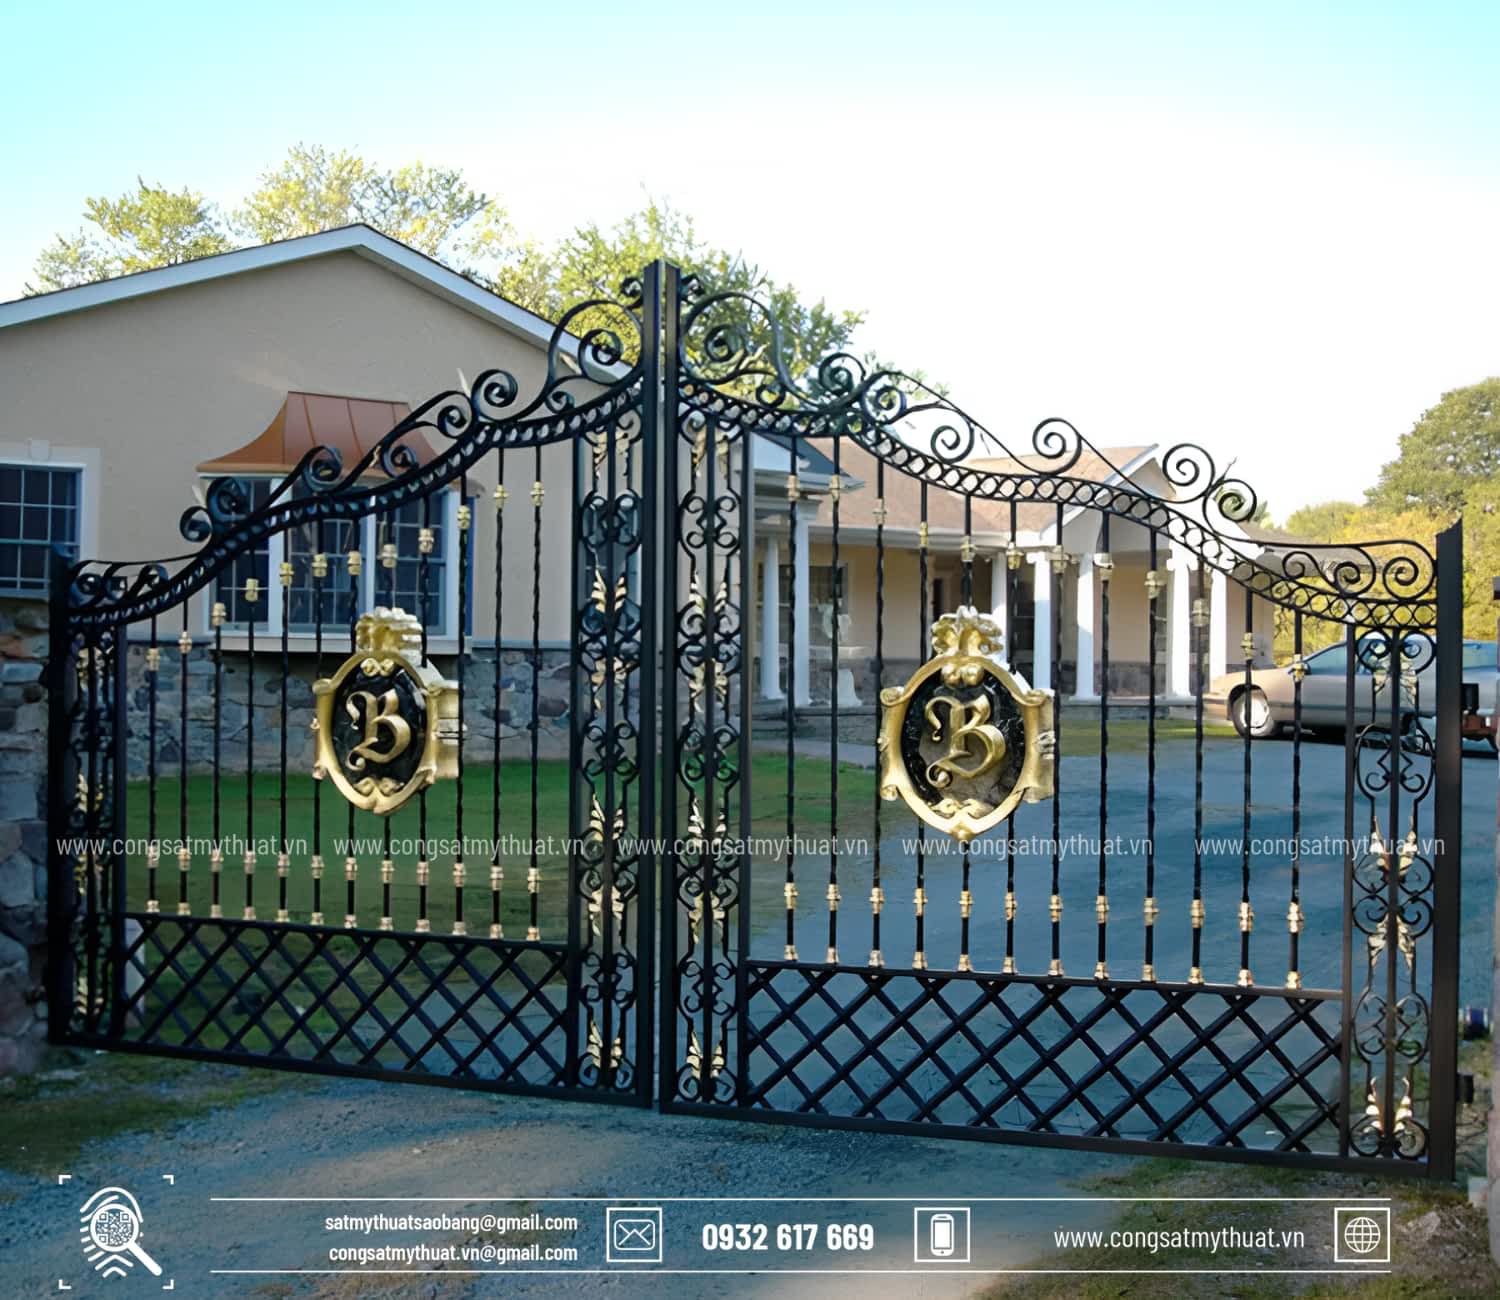 Điều kiêng kỵ khi làm cổng nhà: Vật nhọn đối xung với cổng nhà